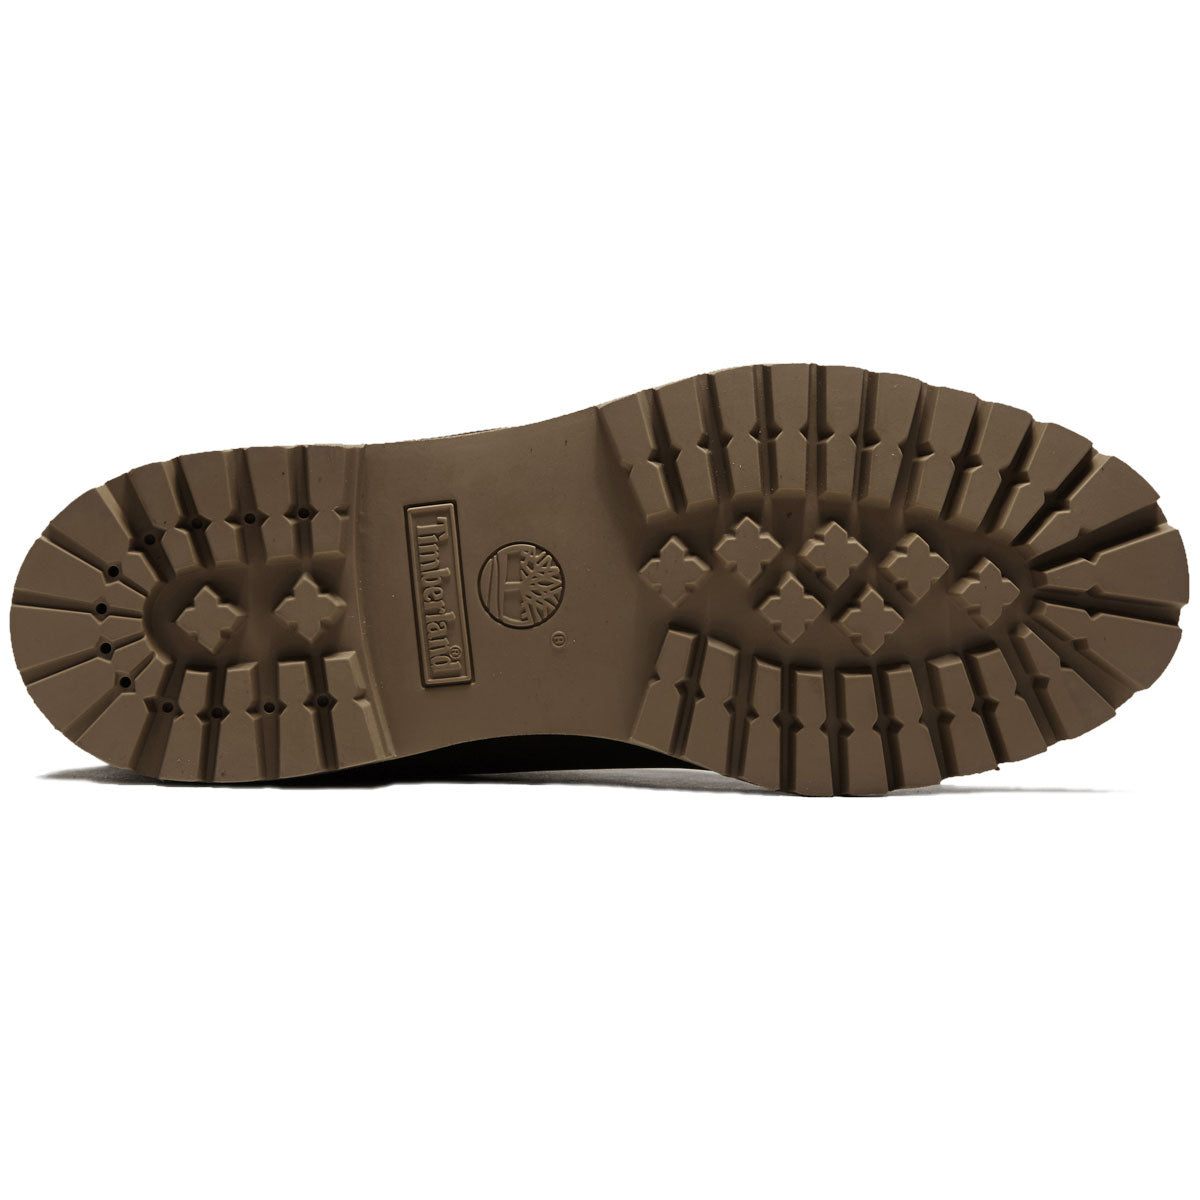 Timberland 6 Inch Premium Boots - Dark Brown Nubuck image 4